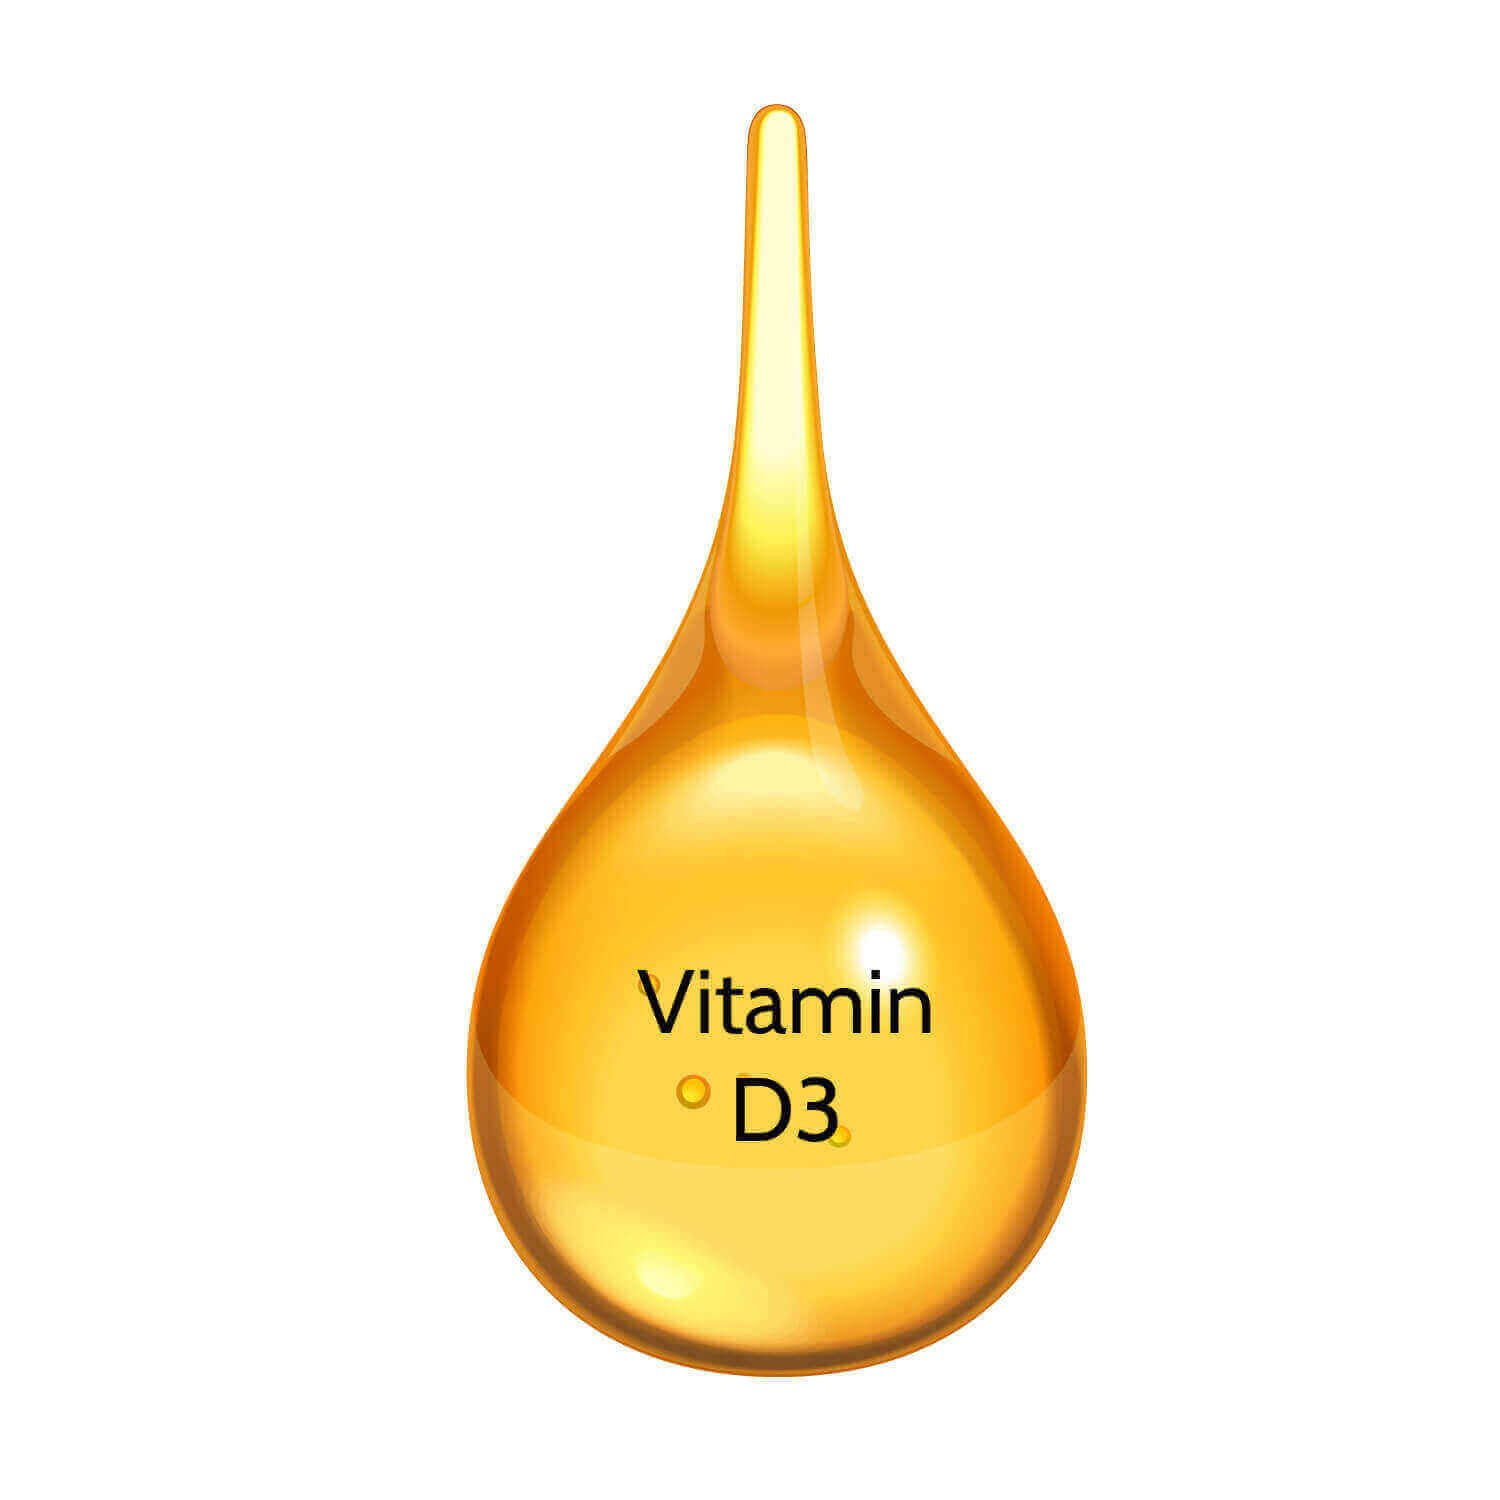 Vitamin_D3_Vida_online_kapseln_Kaufen_Schweiz_1-1.jpg